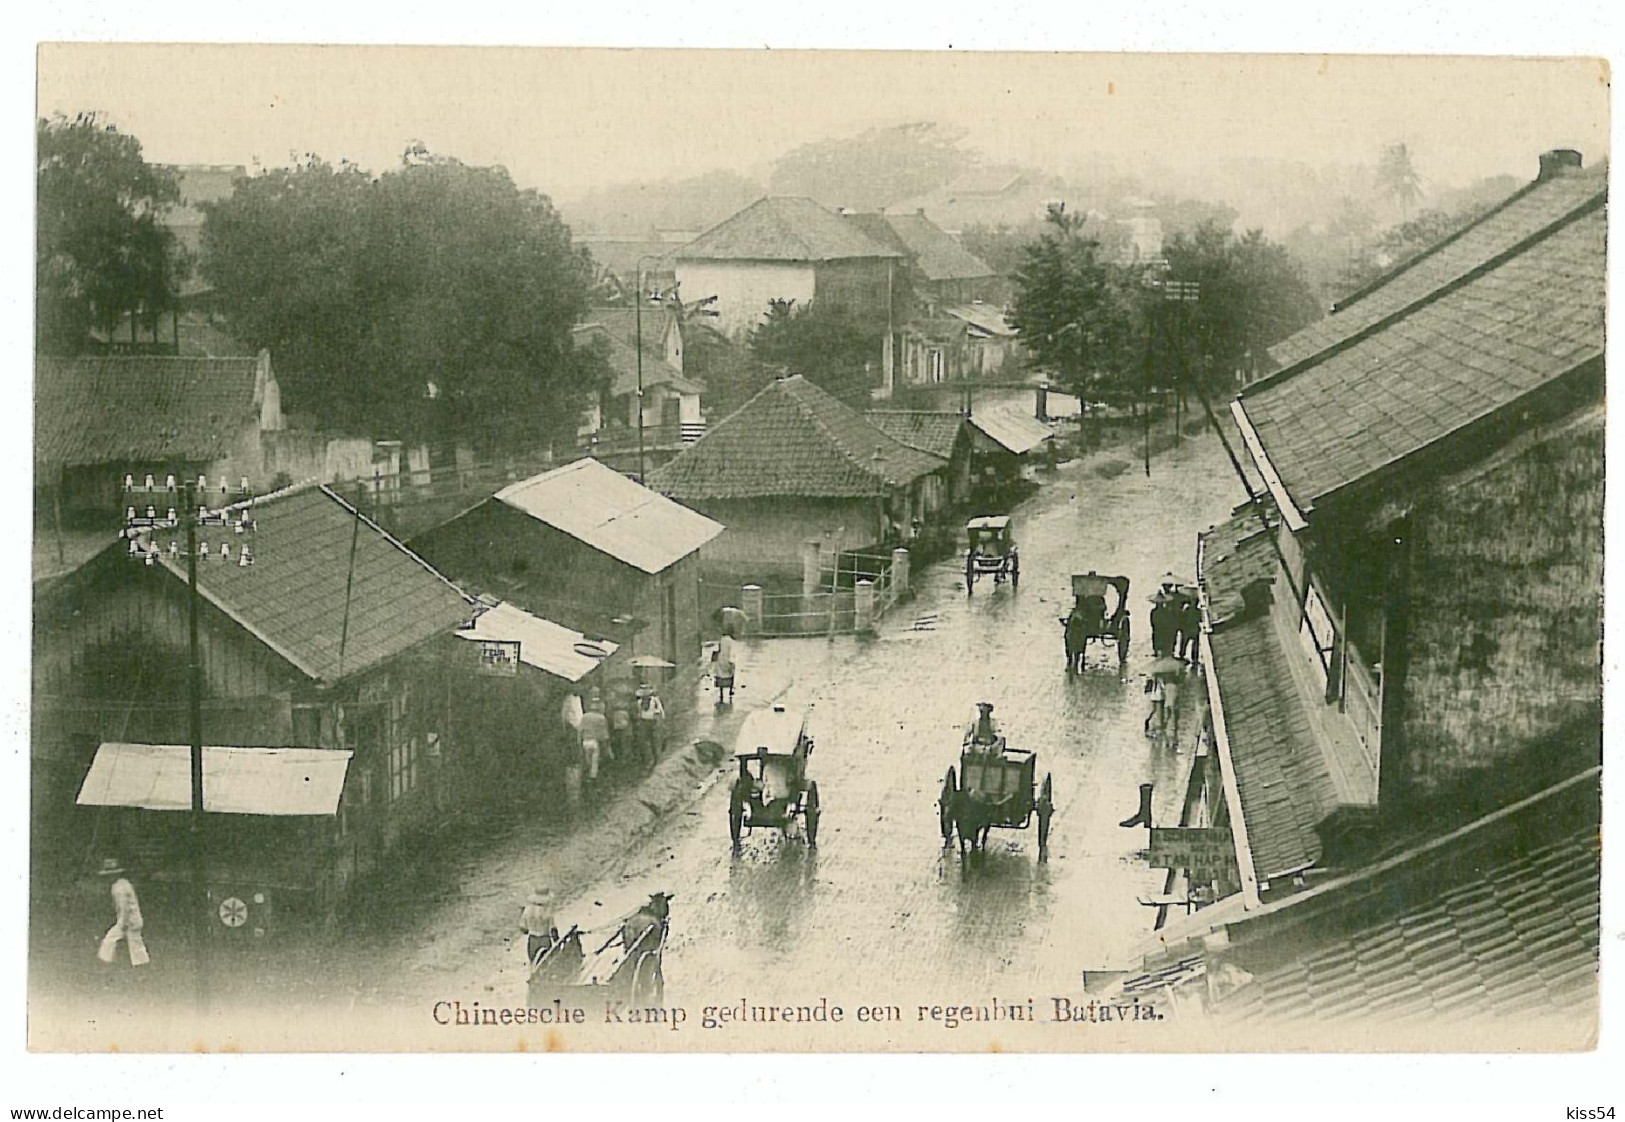 INDO 18 - 8605 BATAVIA, Chinatown, Indonesia - Old Postcard - Unused - Indonesia